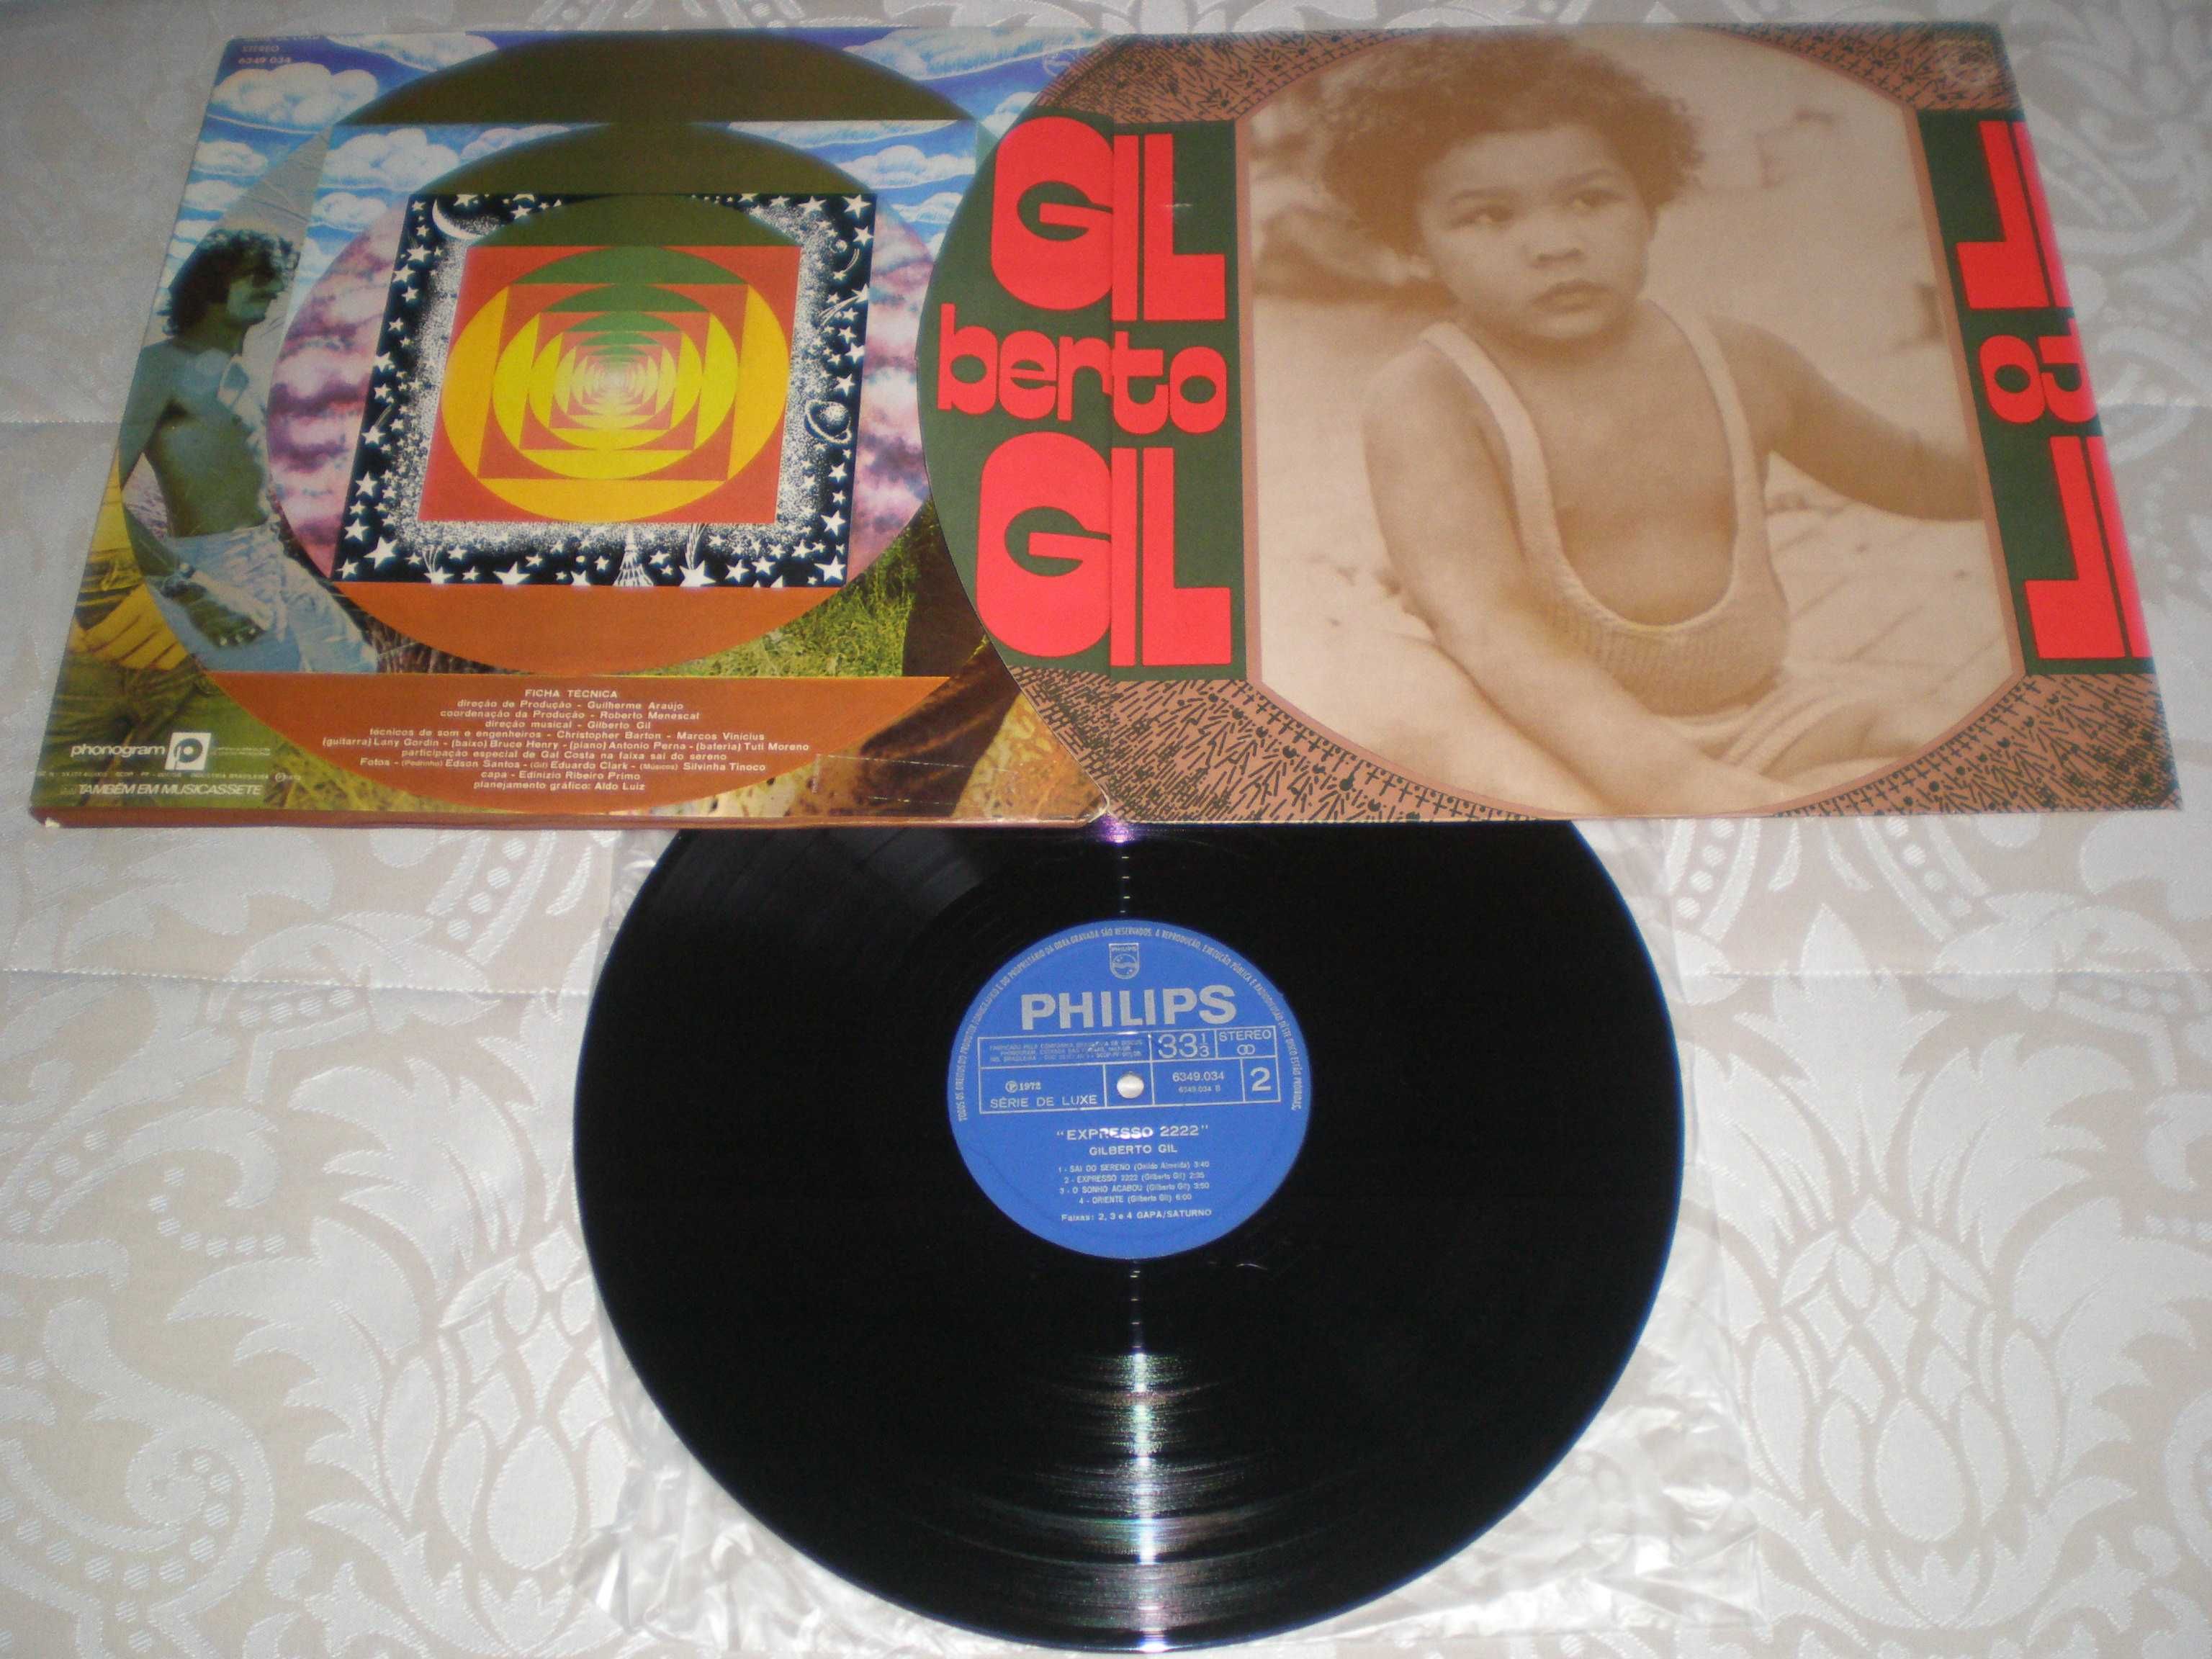 Gilberto Gil - Expresso 2222 - Brasil - Vinil LP